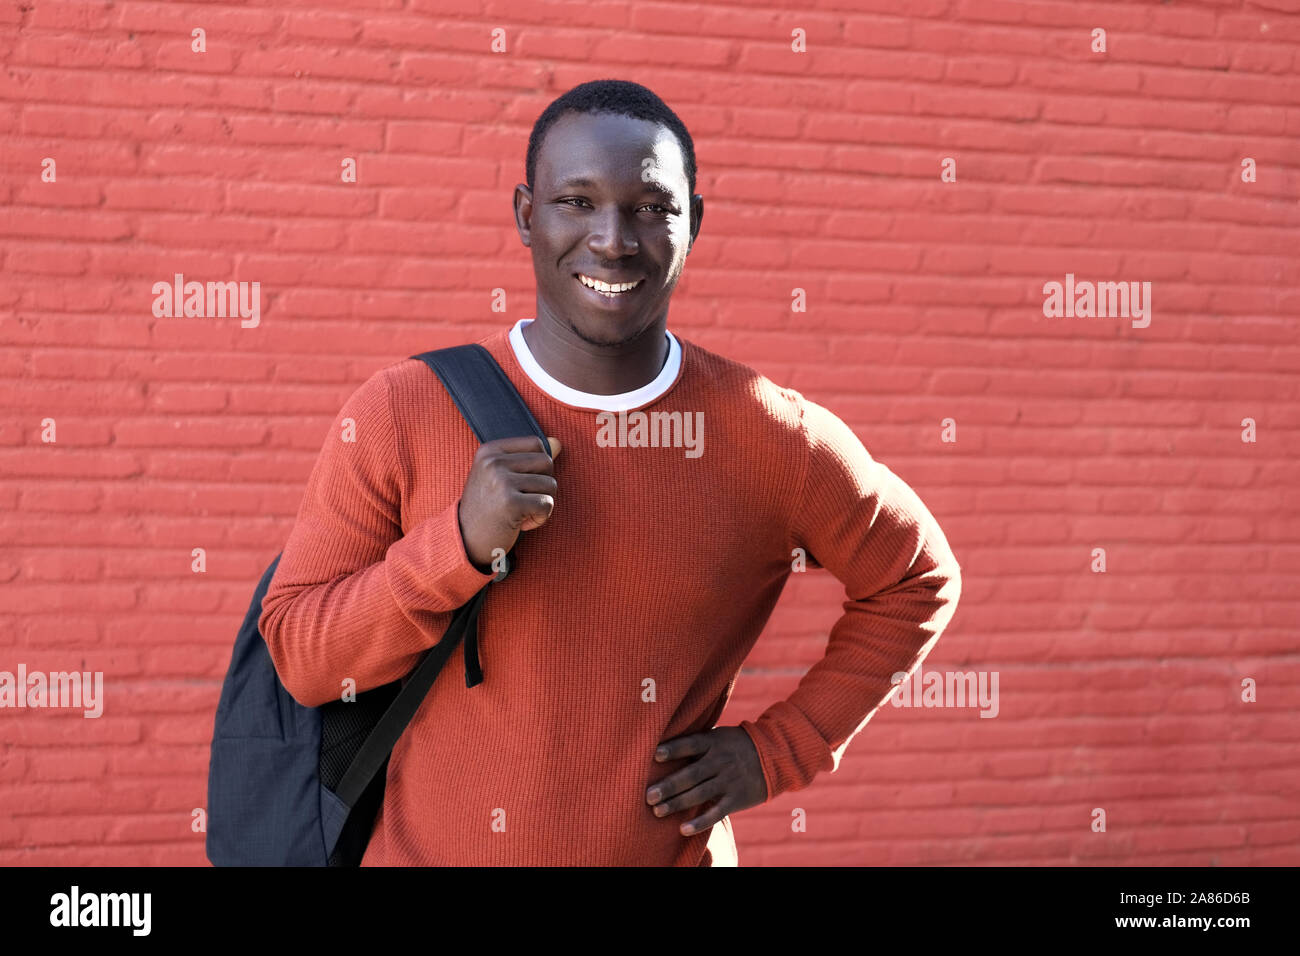 Portrait der Afrikanischen jungen Mann mit Kamera und lächelnd, mit Rucksack für die Schule. Kopieren Sie Speicherplatz auf rote Wand im Hintergrund. Stockfoto